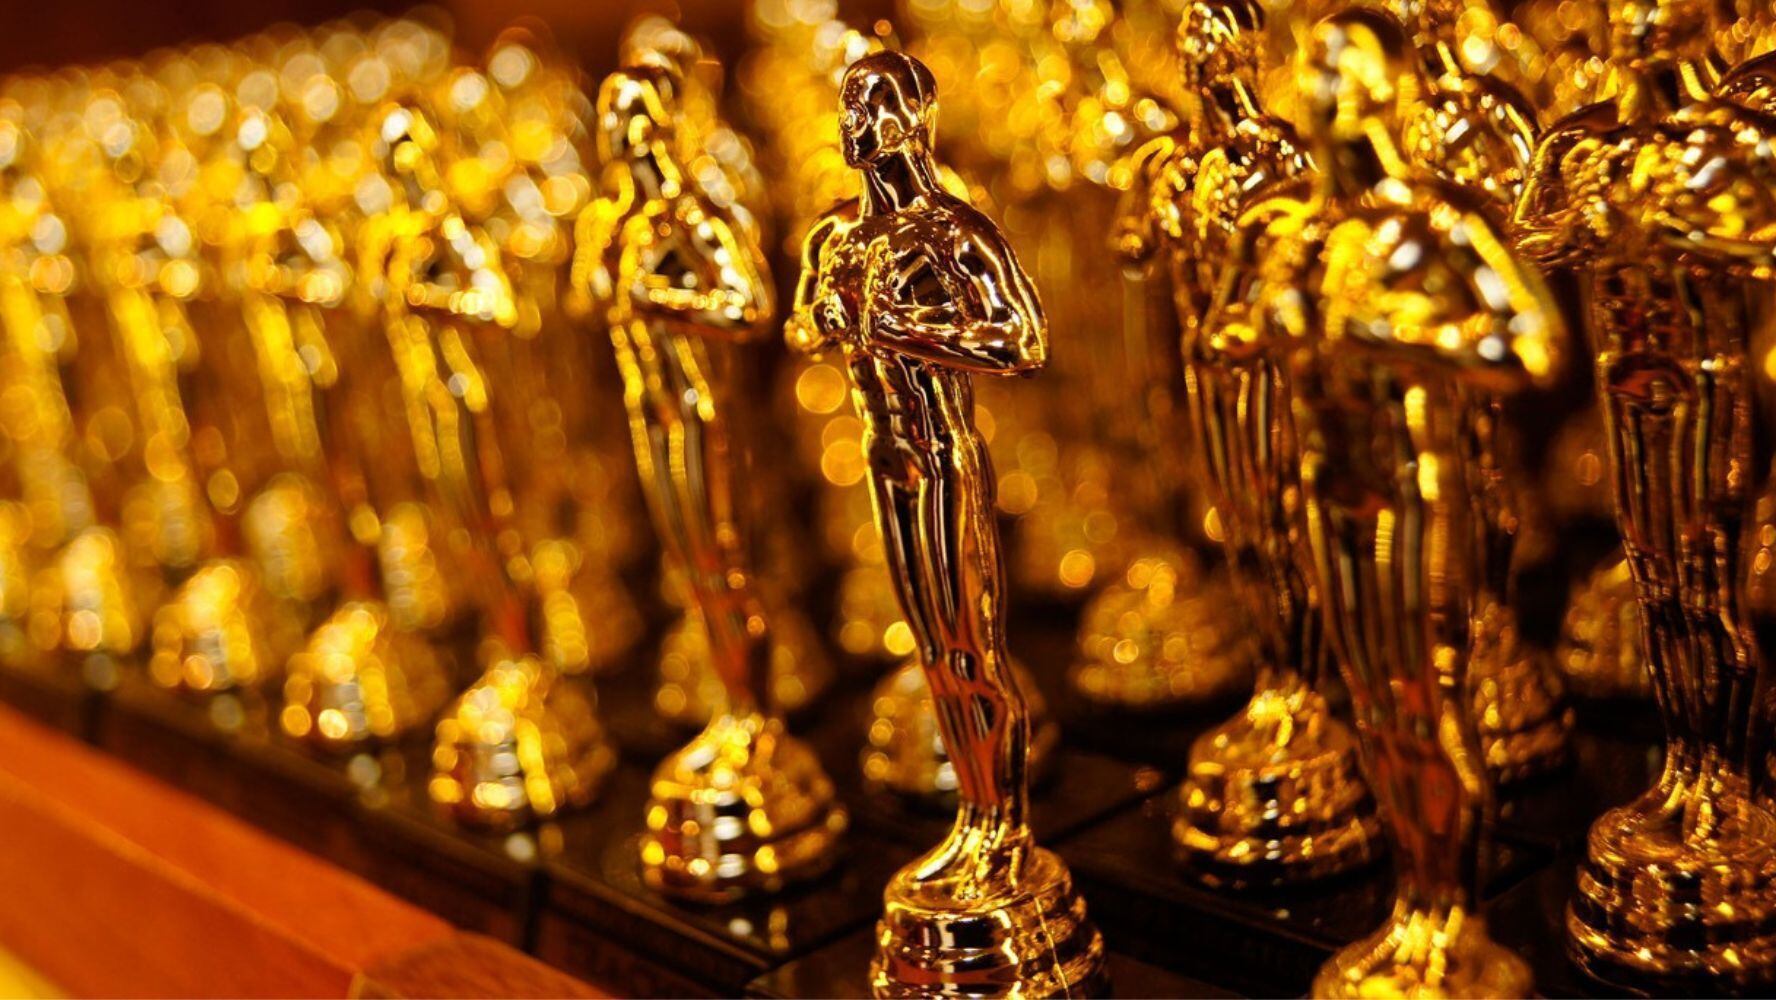 Los ganadores del premio Oscar reciben su estatuilla en medio de una ceremonia televisada, aunque hay algunos actores vetados. (Foto: Shutterstock)